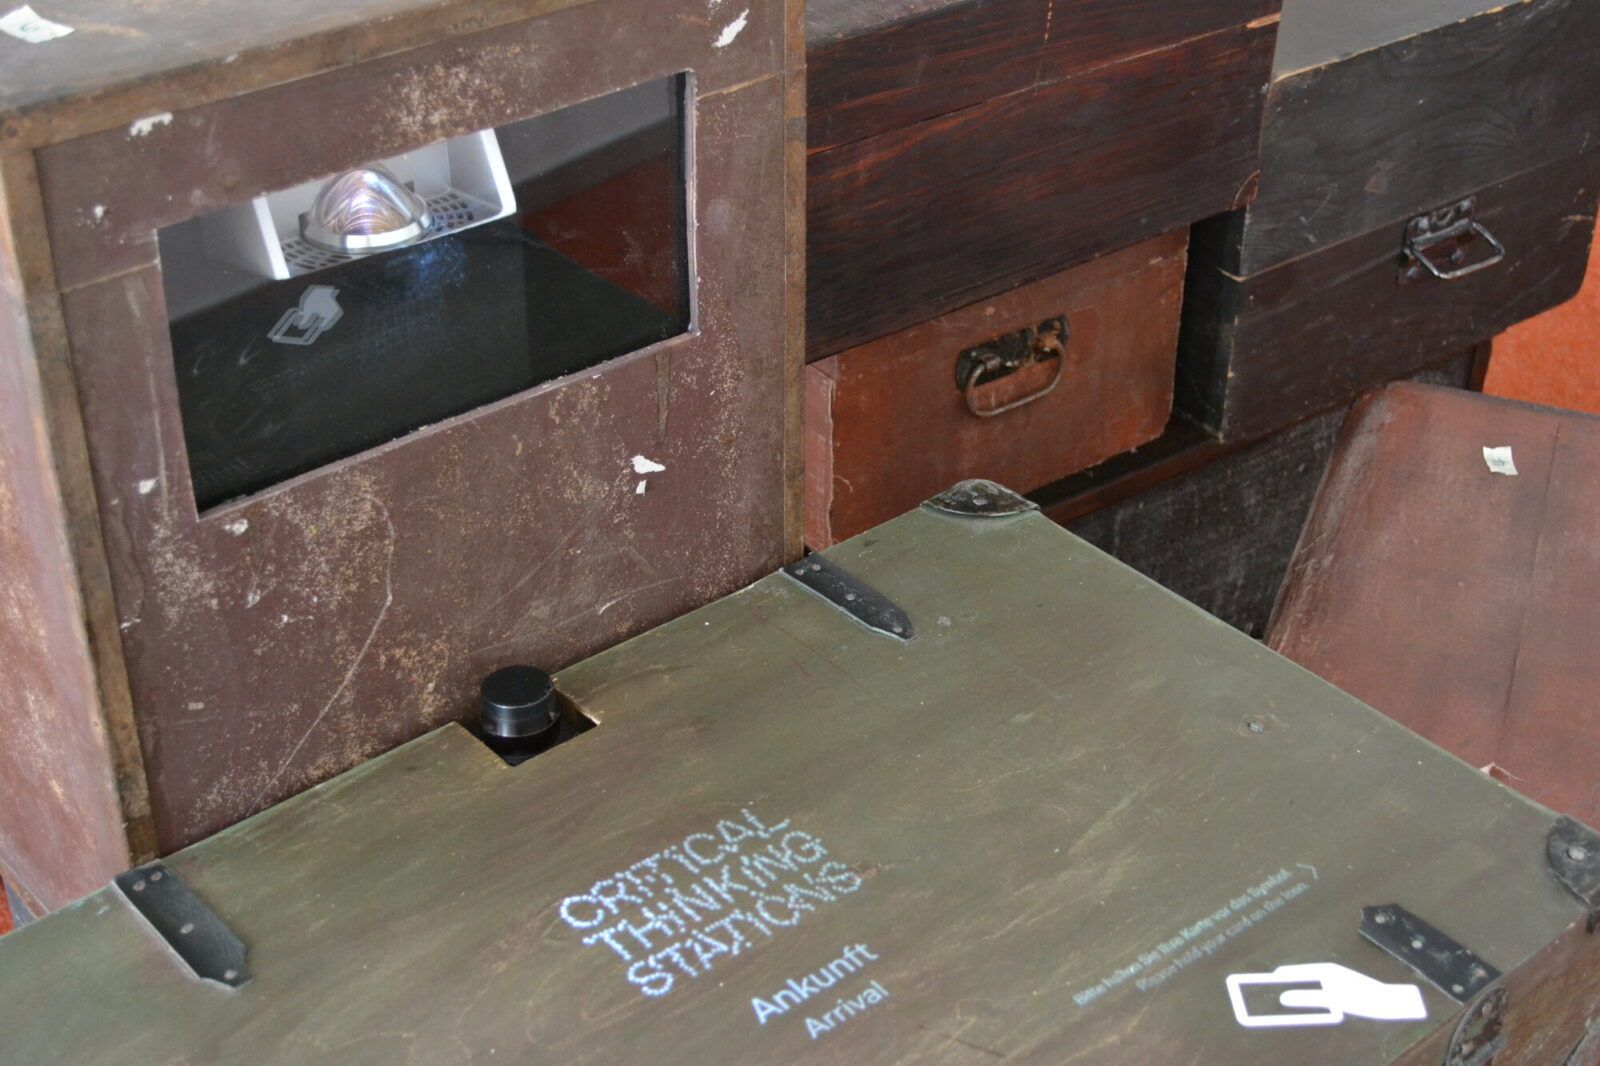 An einer CTS-Station, die in einen Koffer intergriert ist, sollen die CTS-Fragen per Beamer-Projektion gezeigt werden.